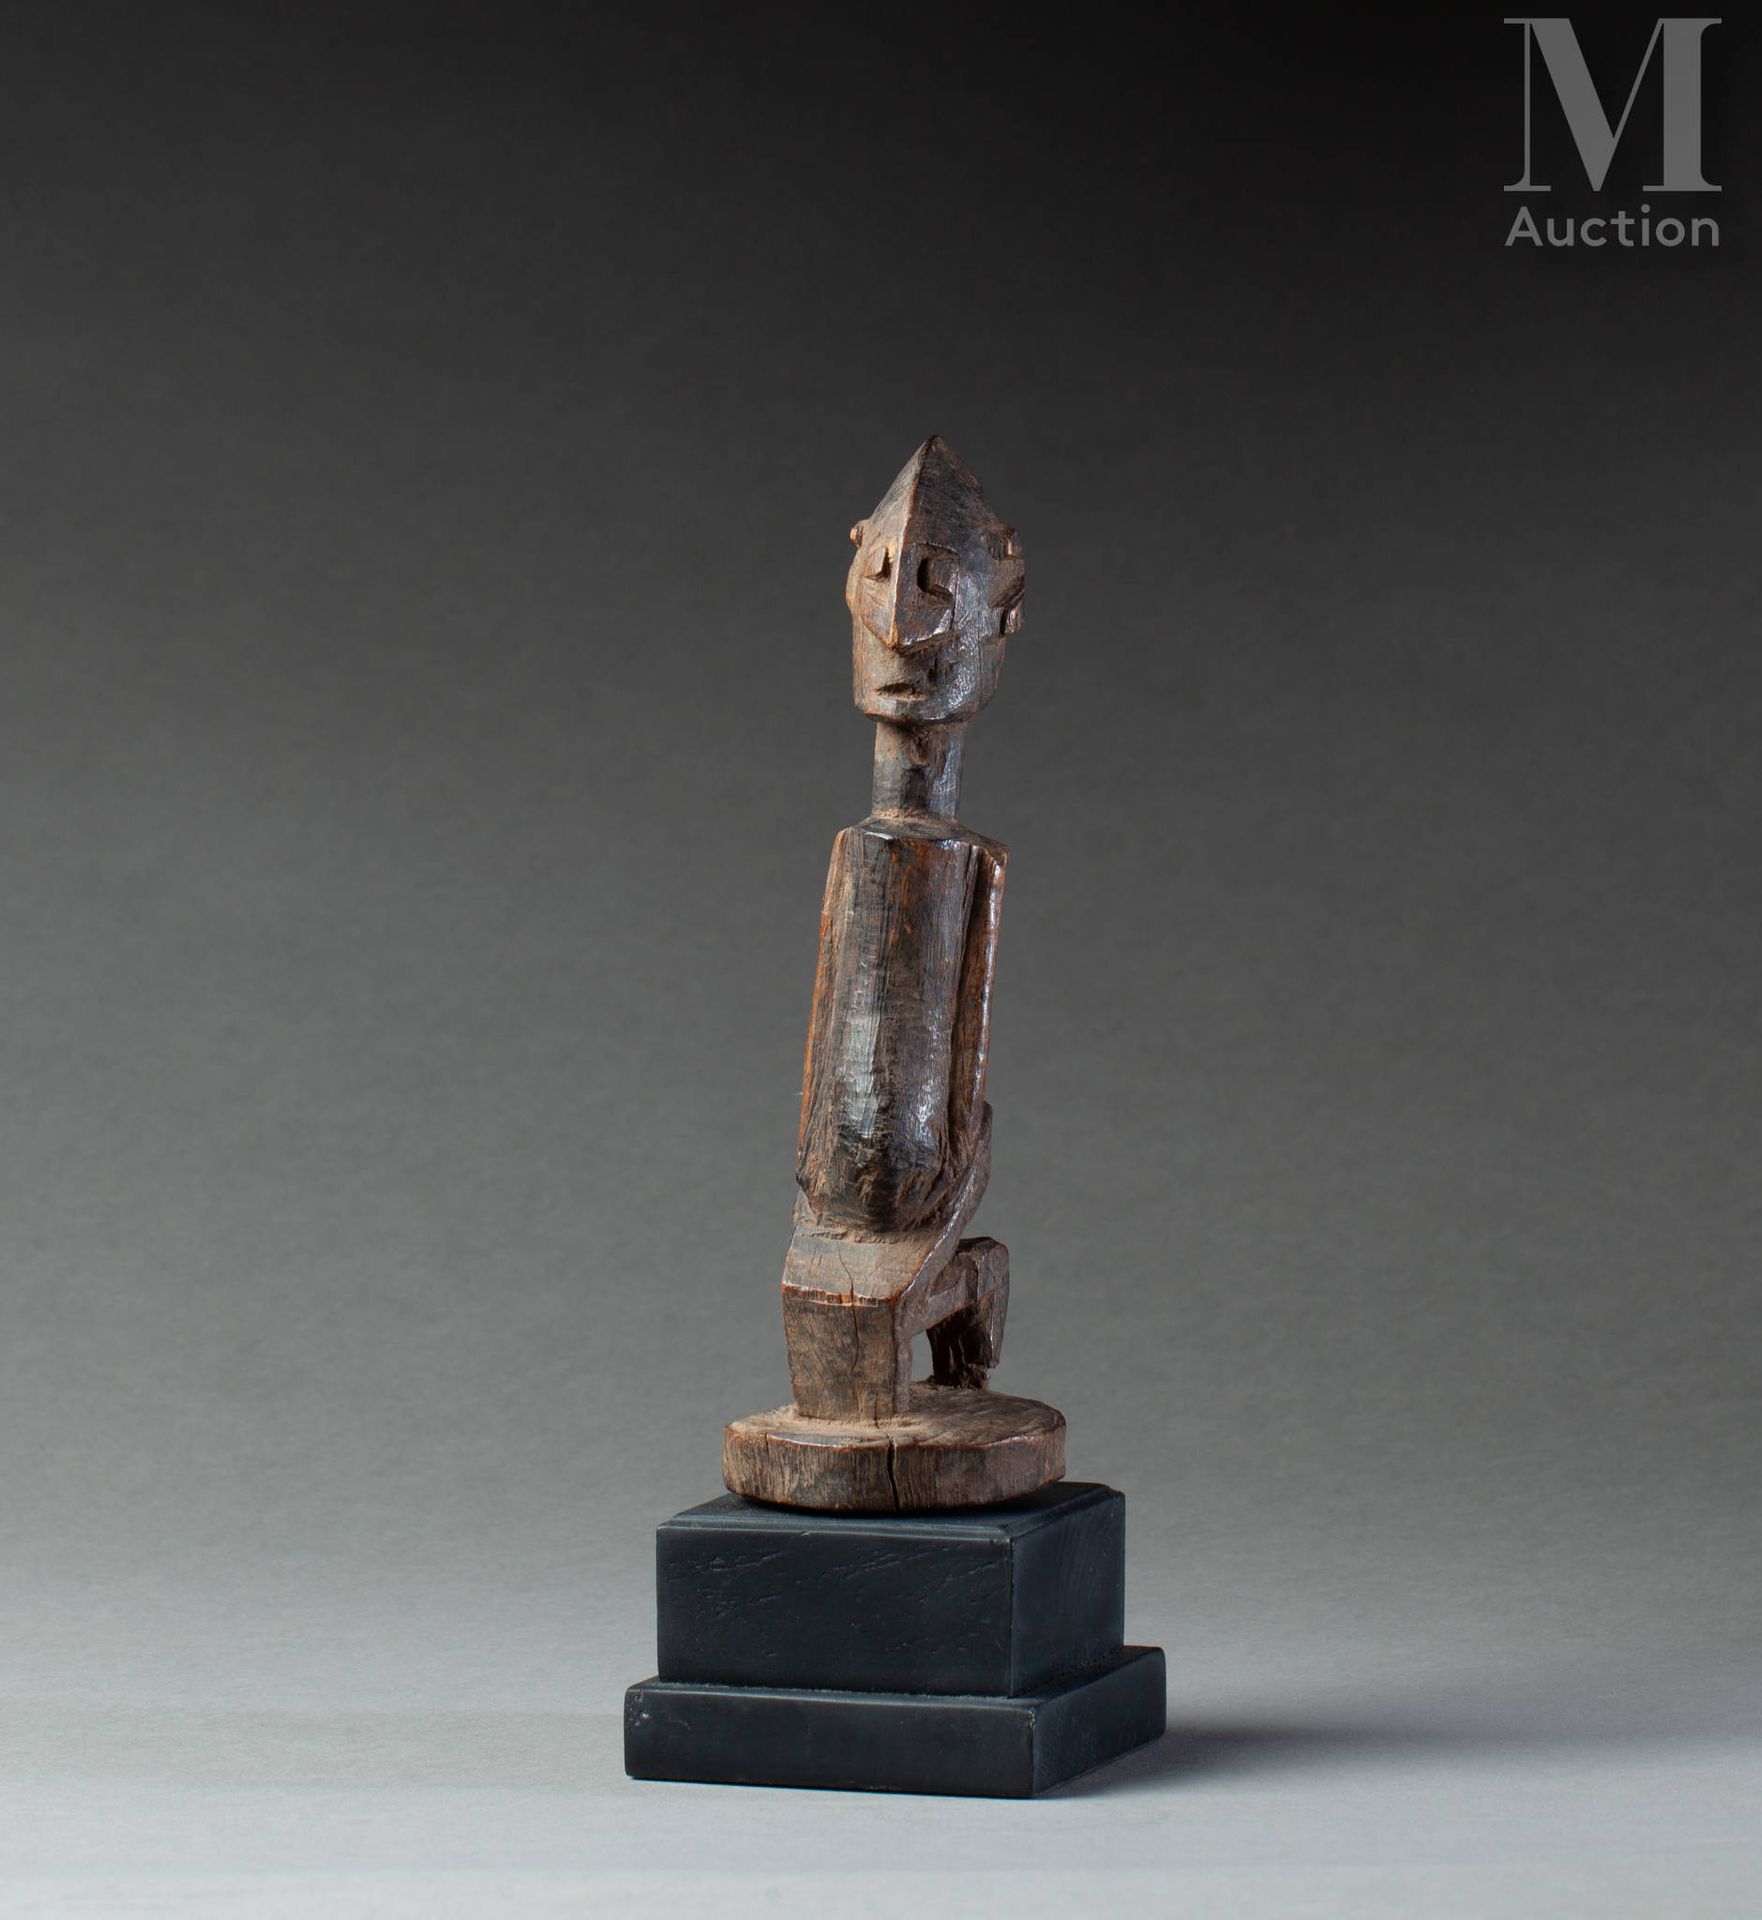 Statuette (Dogon) 显示了一个蹲着的人物，有长长的手臂，动物的耳朵和一个雕刻成箭头的鼻子。

硬木，古老的棕色和蜂蜜色泽。

多贡，马里，19世&hellip;